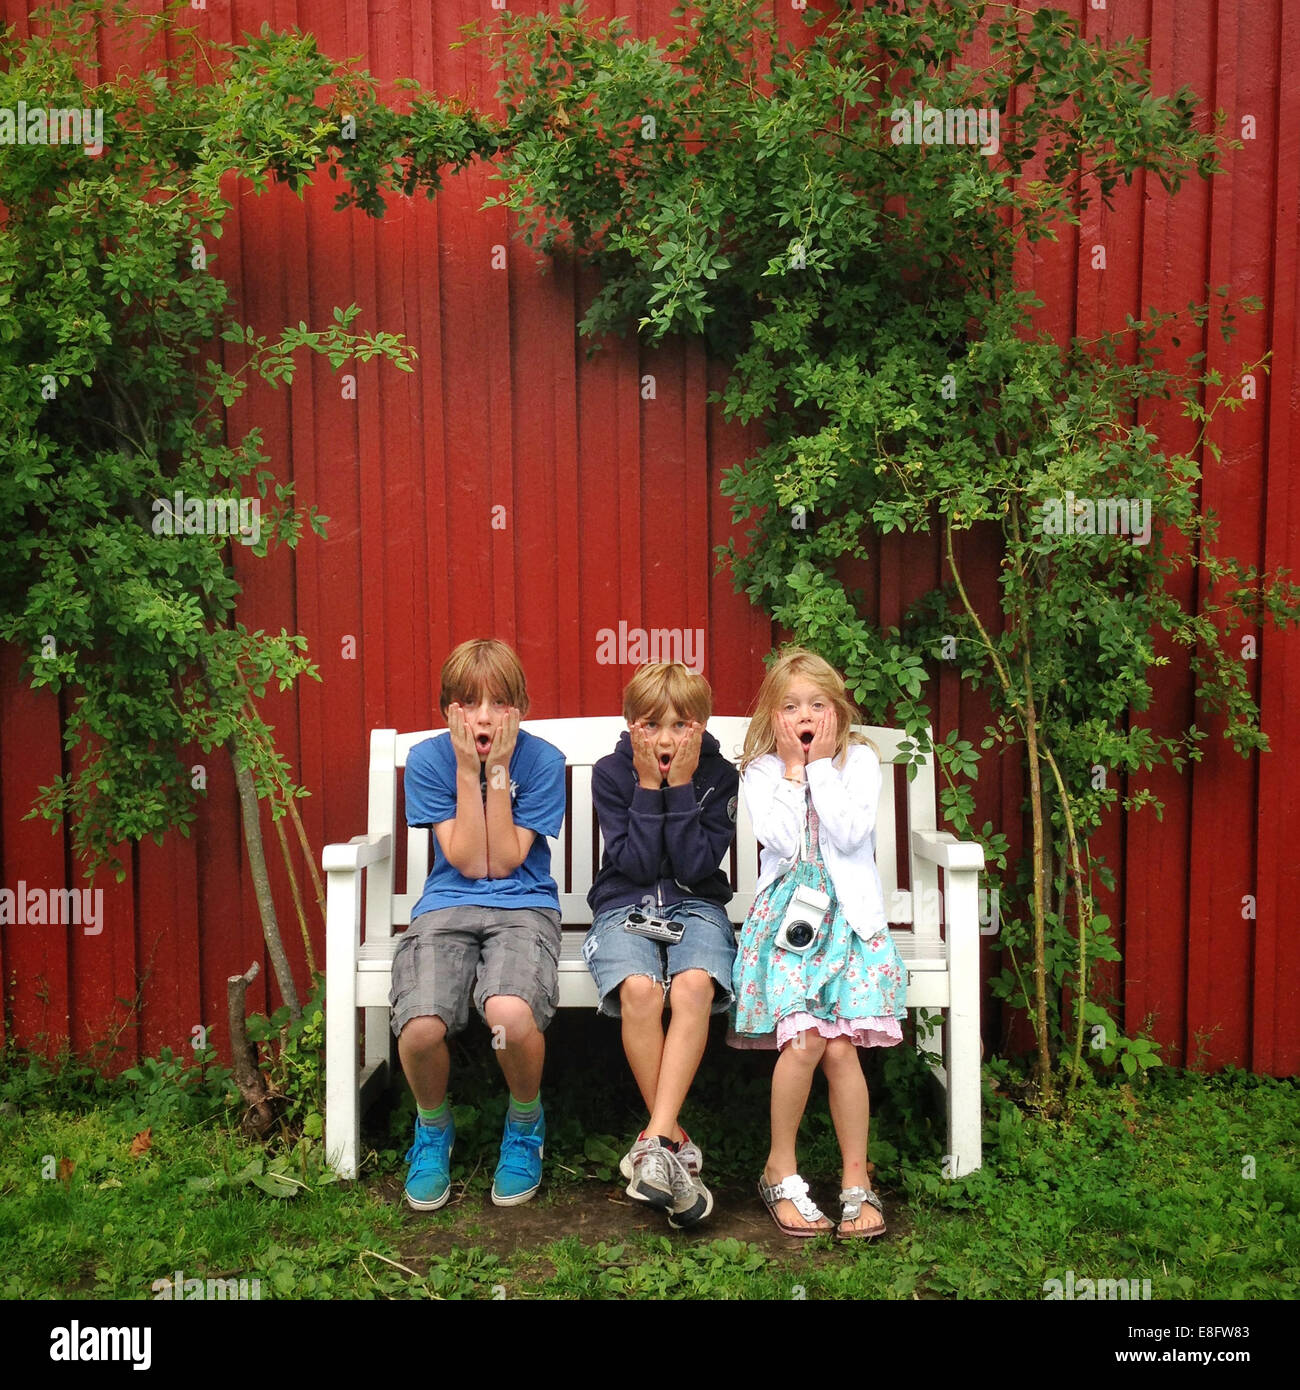 Three children sitting on bench in garden Stock Photo